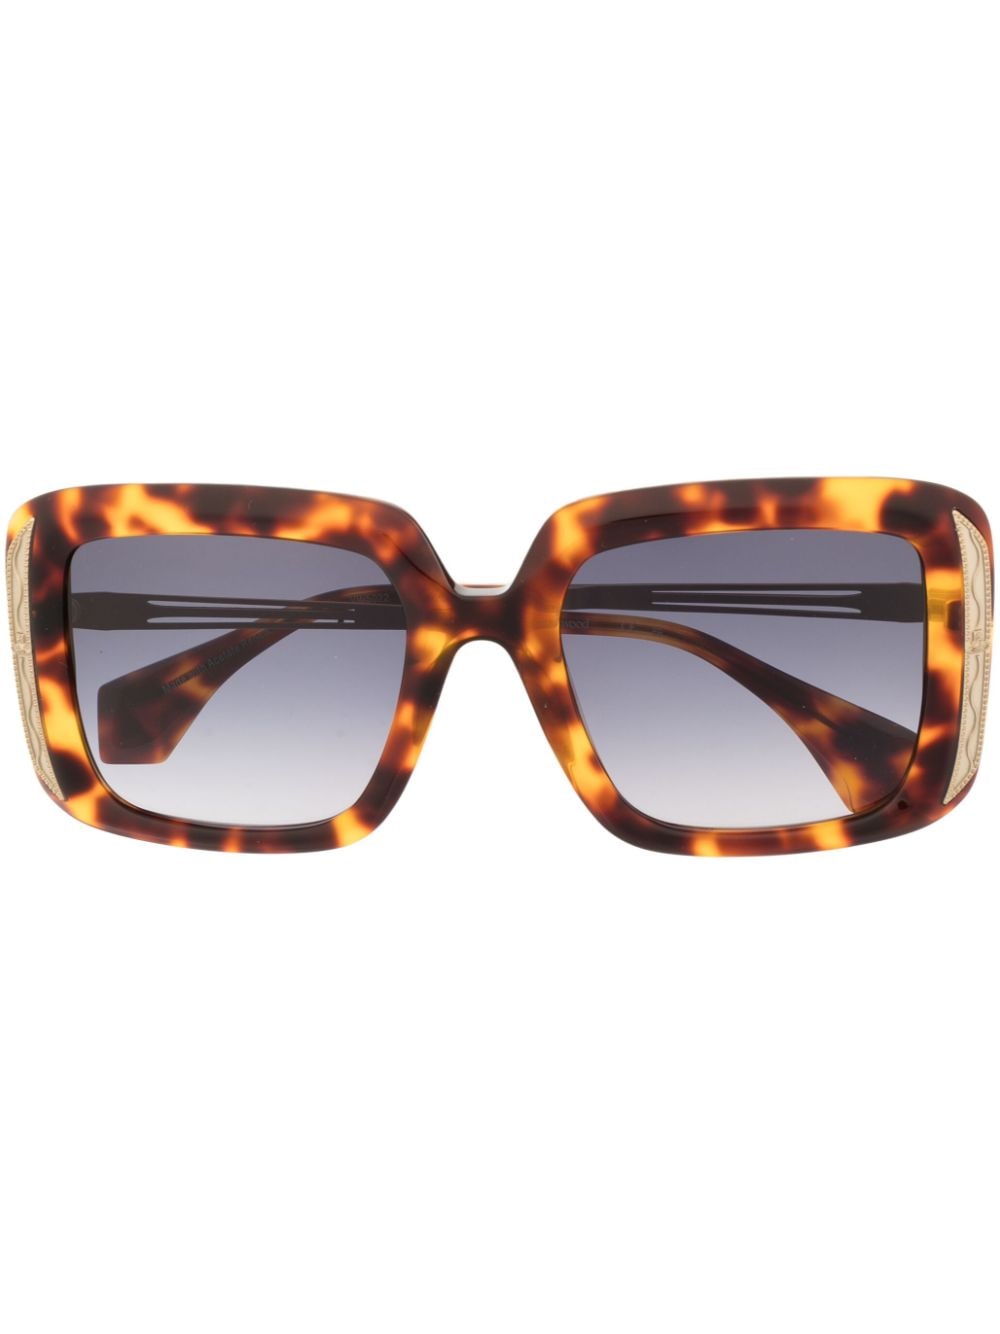 vivienne westwood lunettes de soleil carrées à effet écailles de tortue - marron